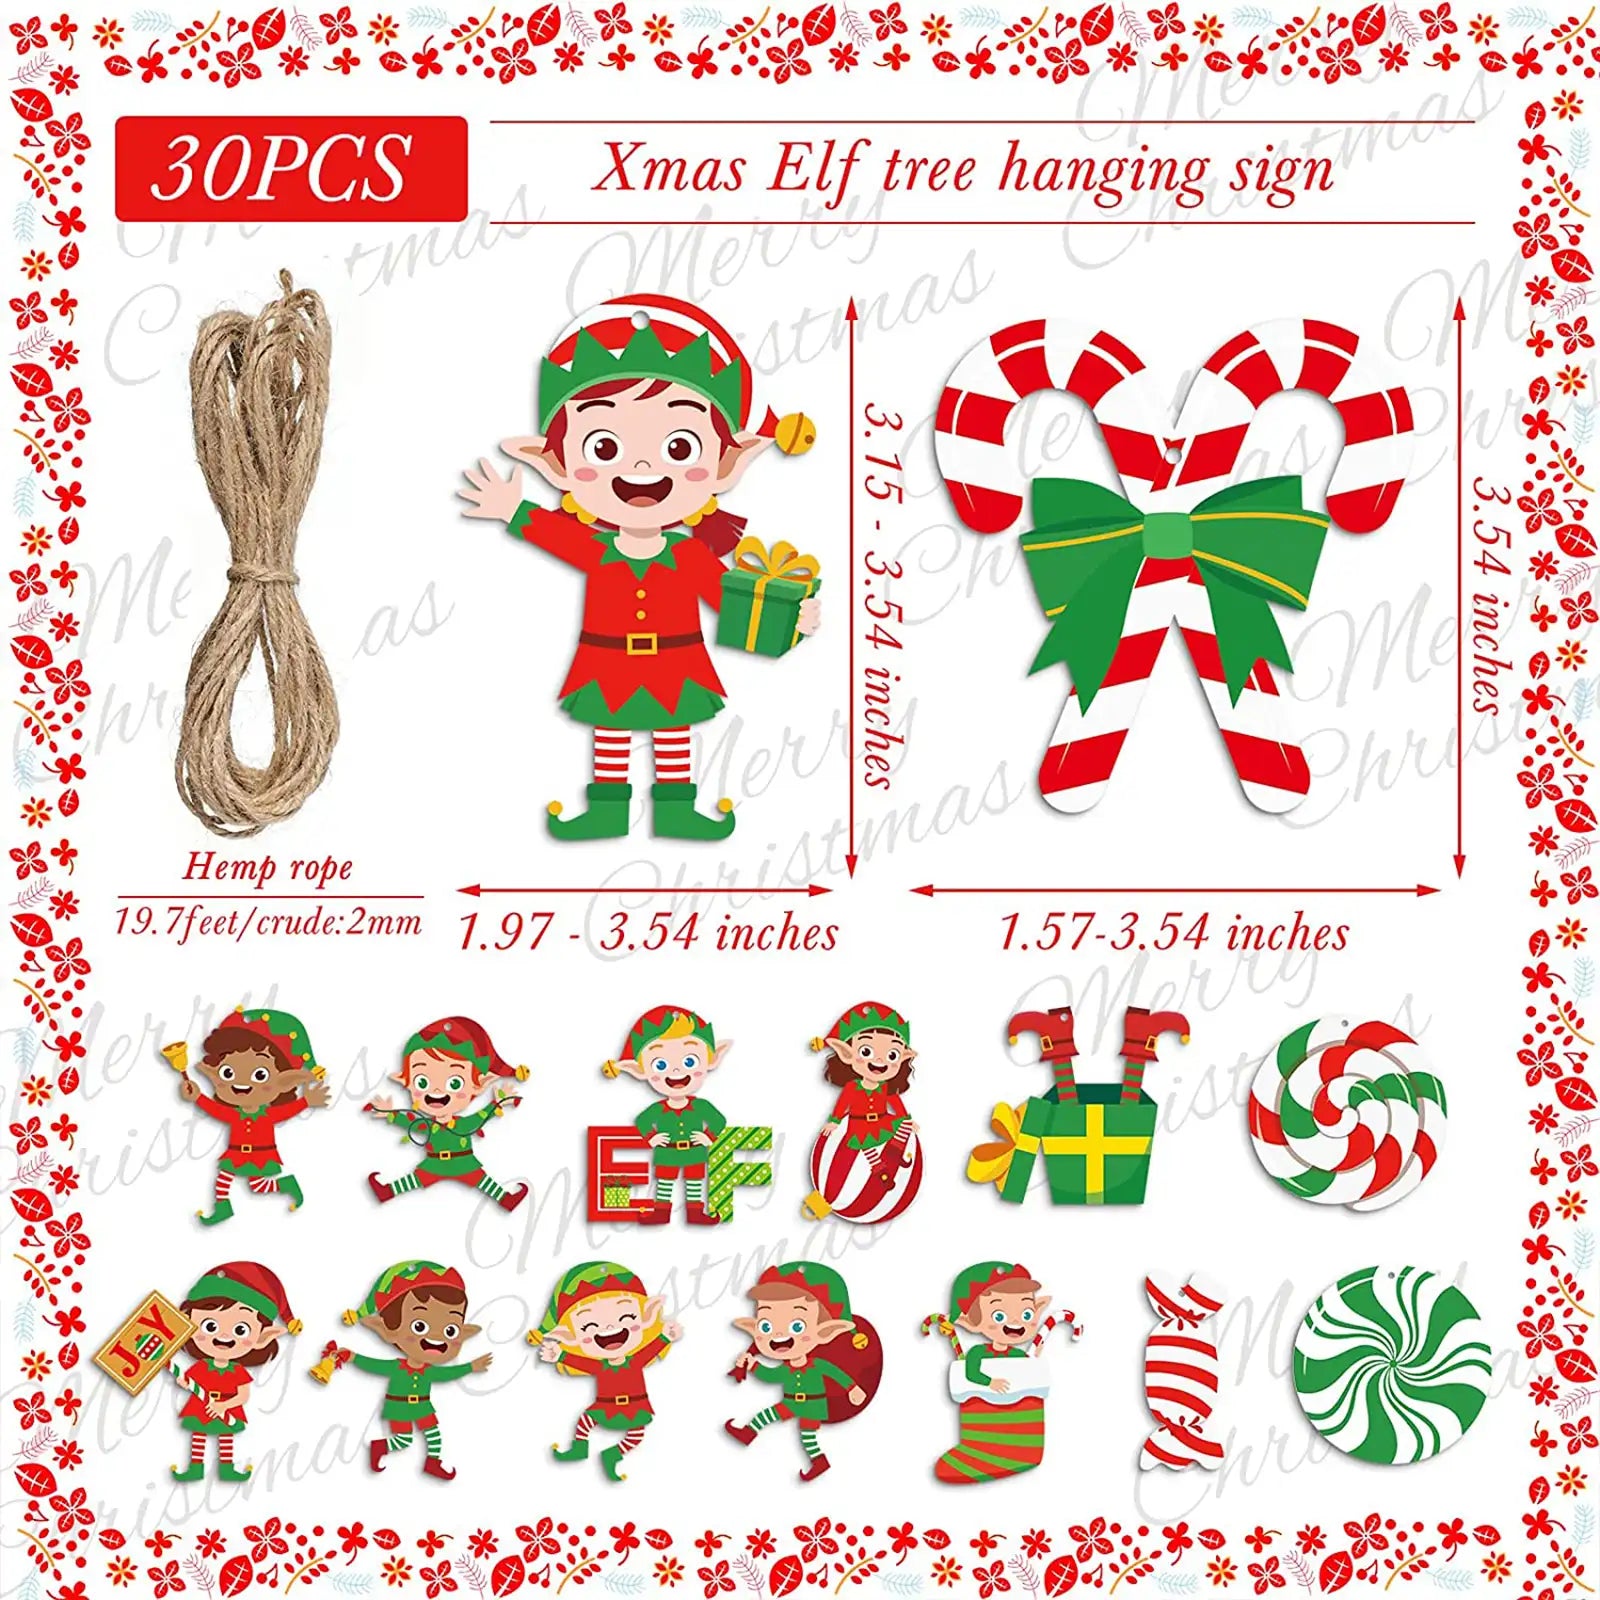 30 Pcs Elf Christmas Tree Ornaments Decoration Elf Wooden Hanging Ornaments